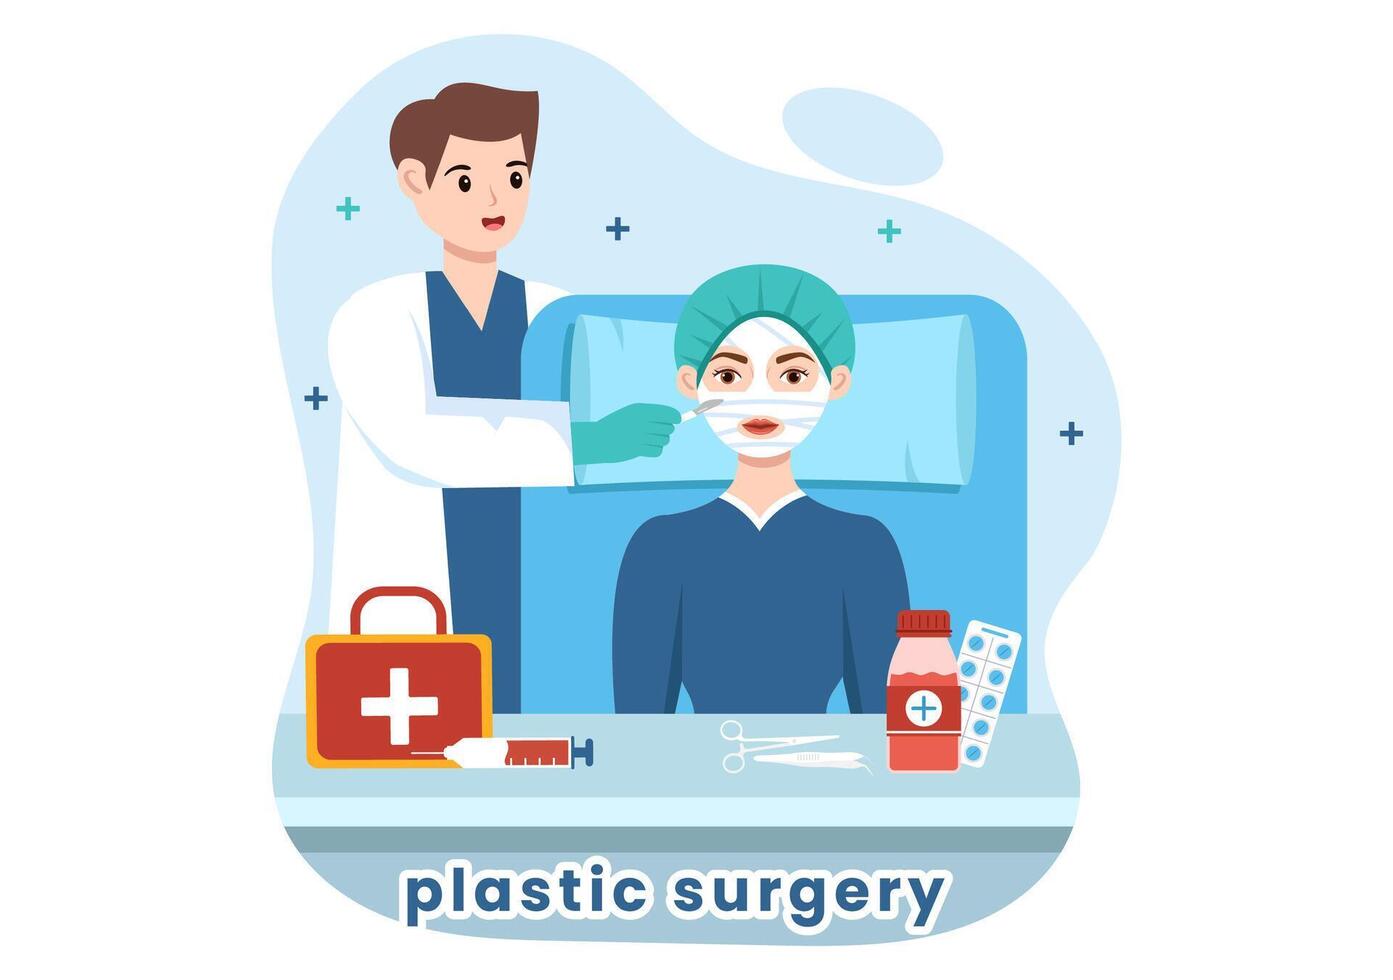 Plastik Chirurgie Vektor Illustration von medizinisch chirurgisch Betrieb auf das Körper oder Gesicht wie erwartet mit fortgeschritten Ausrüstung im Karikatur Hintergrund